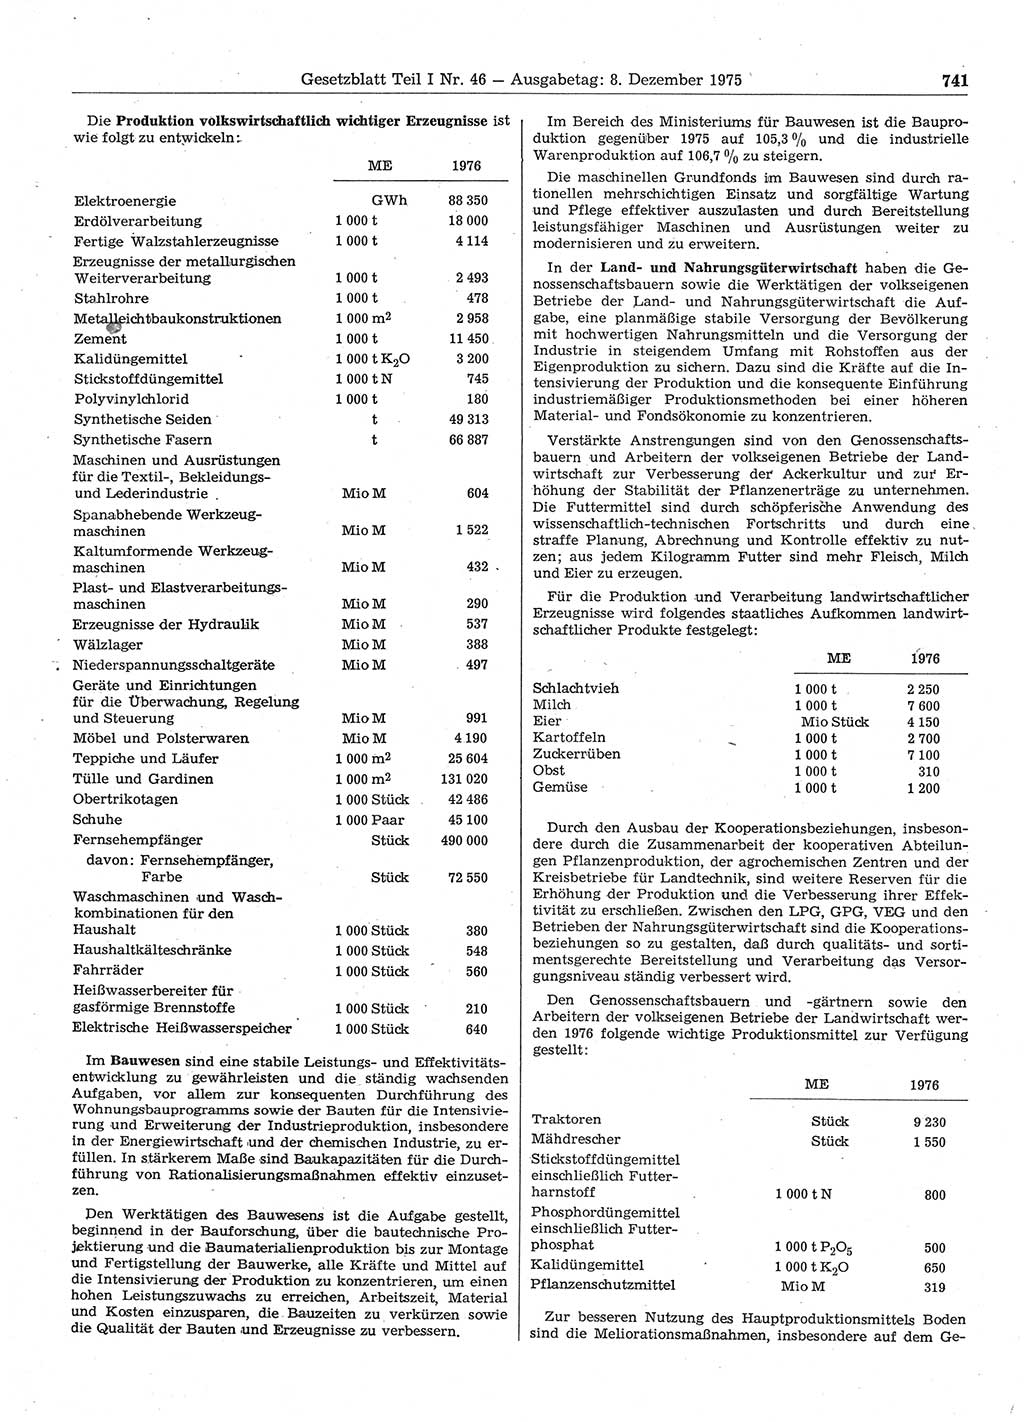 Gesetzblatt (GBl.) der Deutschen Demokratischen Republik (DDR) Teil Ⅰ 1975, Seite 741 (GBl. DDR Ⅰ 1975, S. 741)